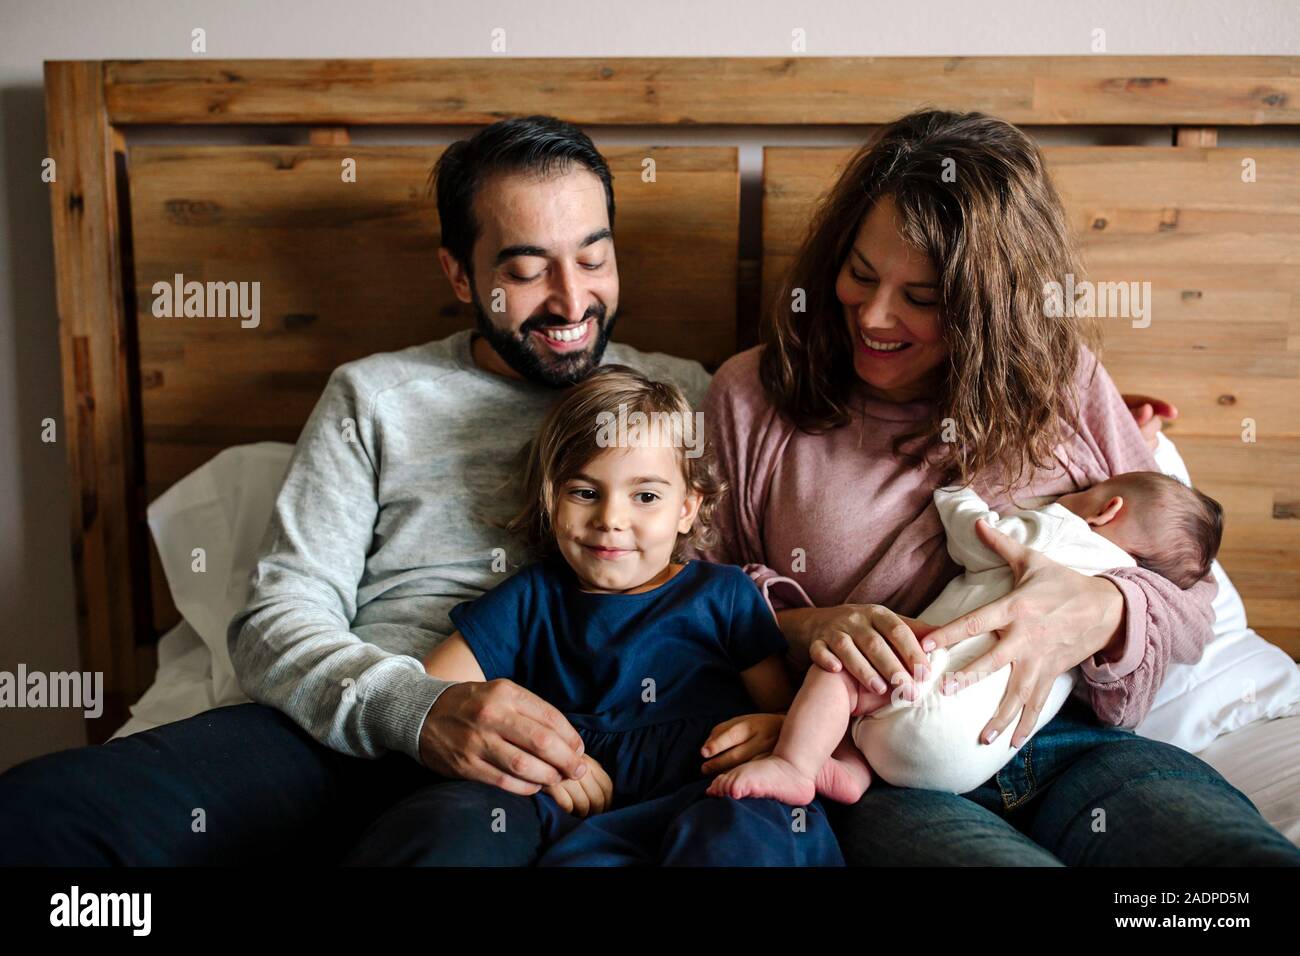 Smiling family blotti ensemble tandis que la maman allaite le nouveau-né Banque D'Images